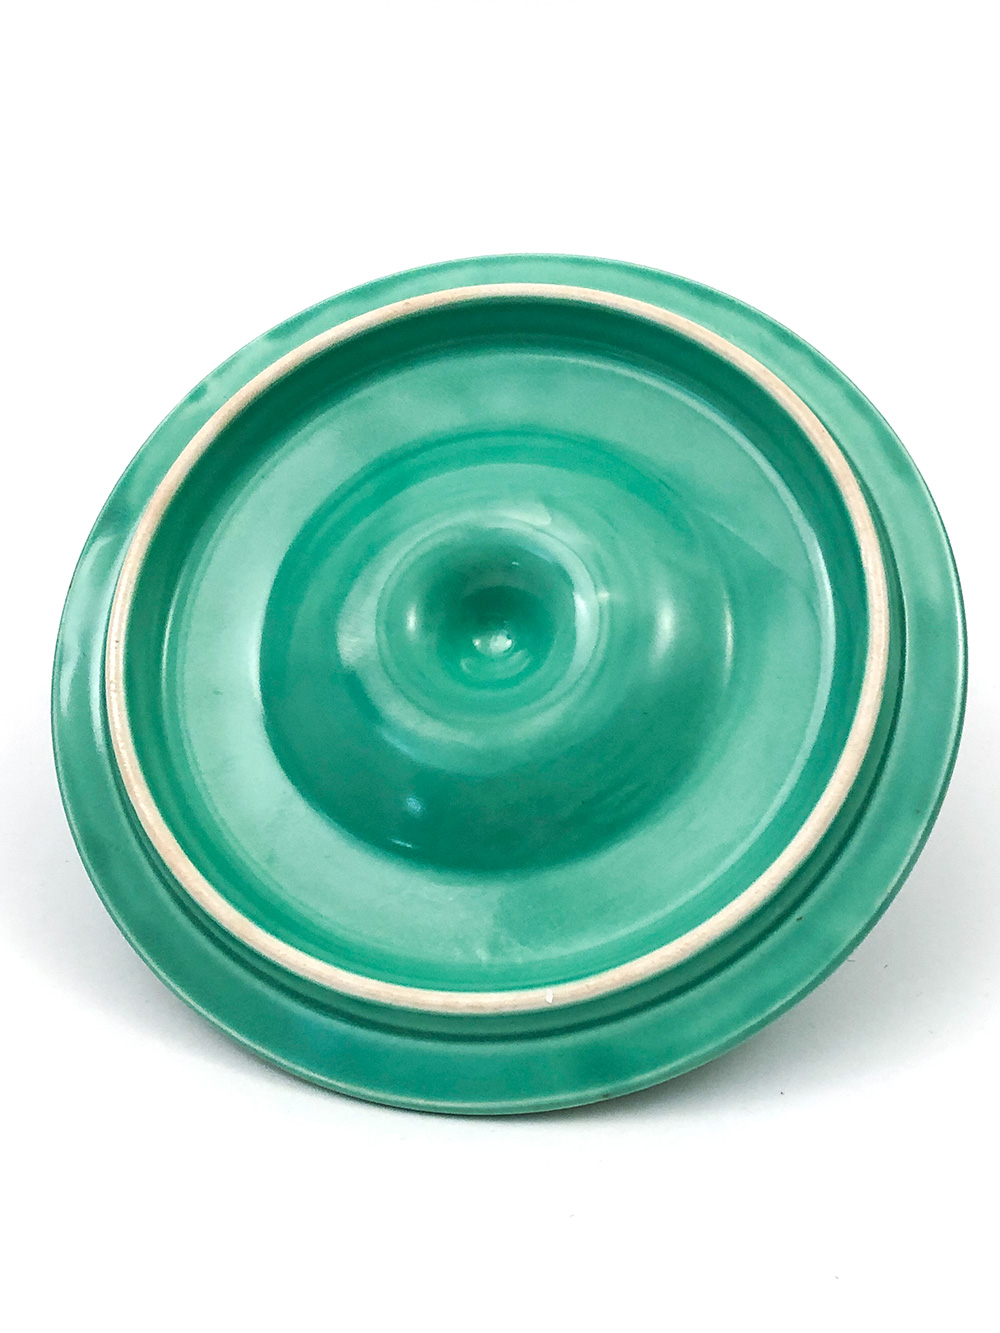 underside vintage fiesta green mixing bowl lid